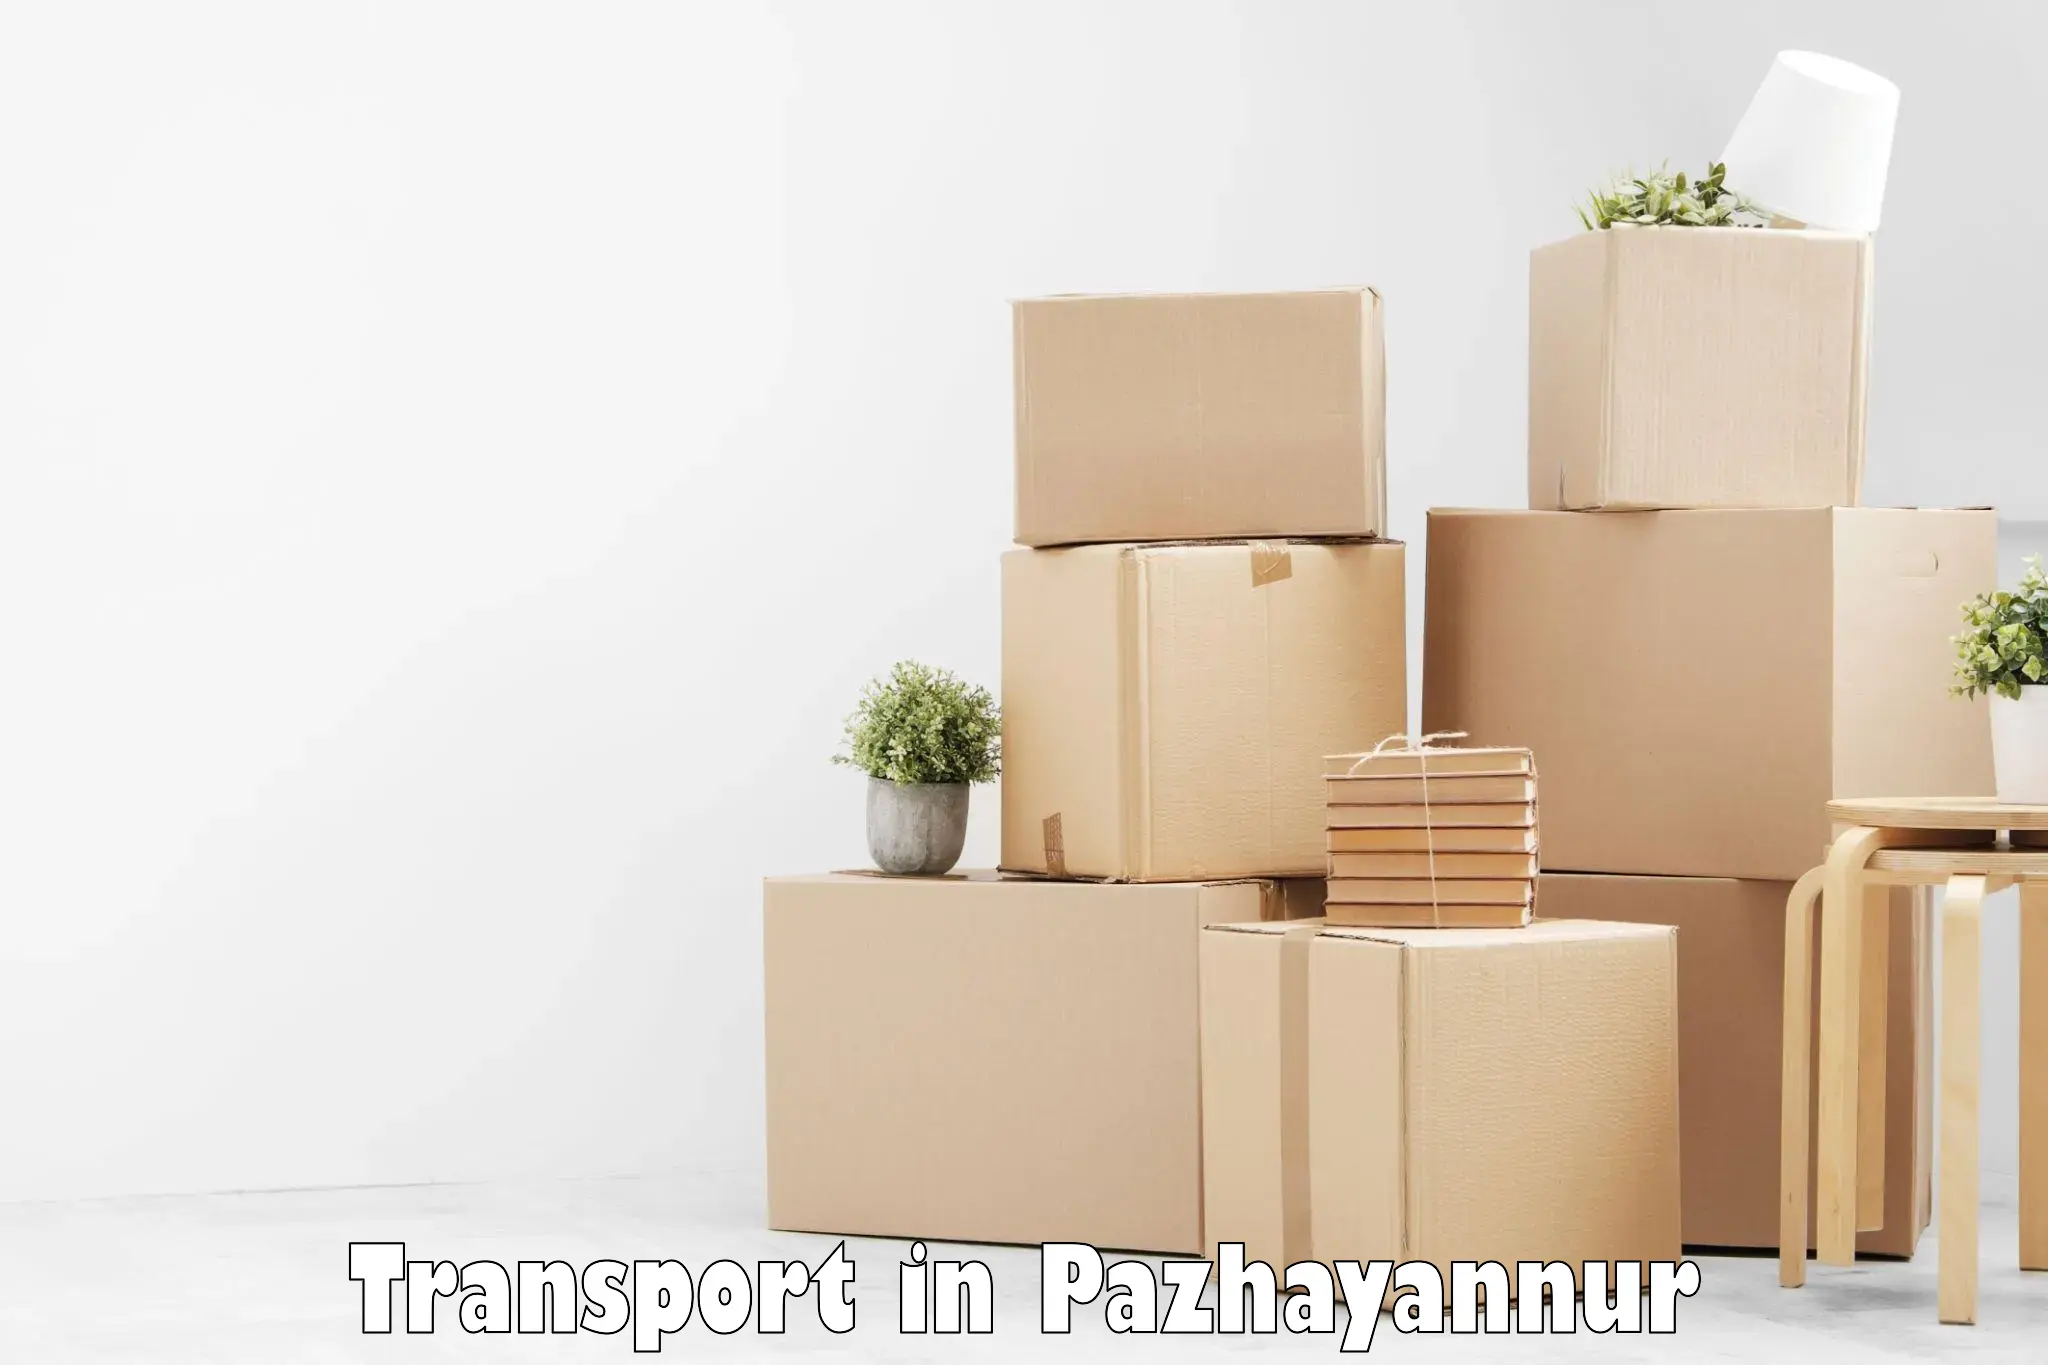 Road transport online services in Pazhayannur